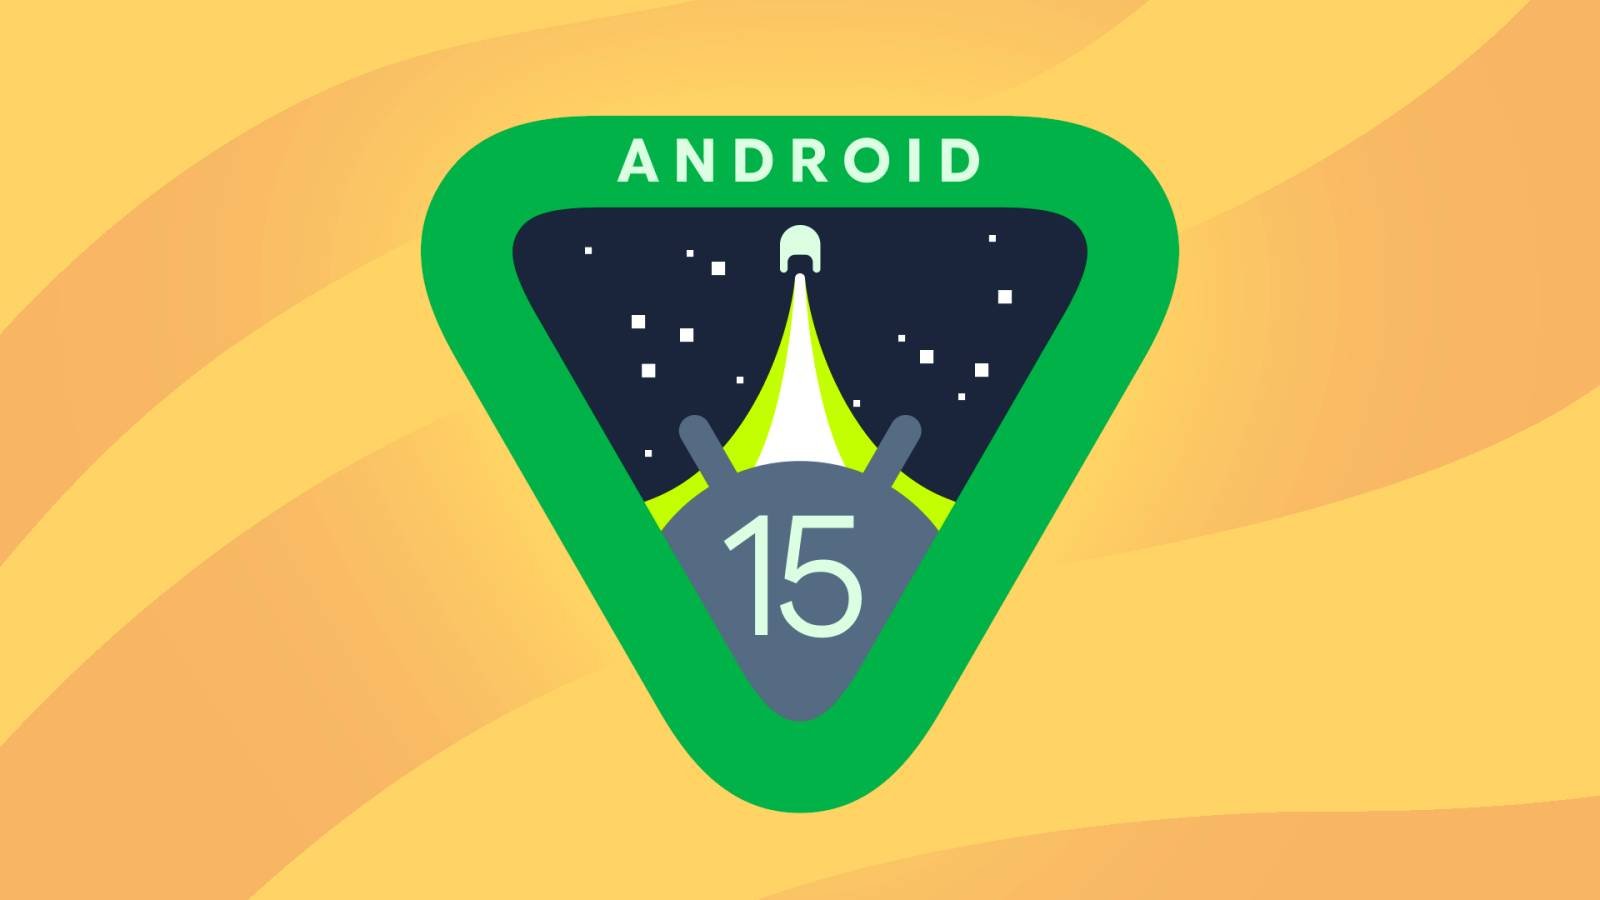 Android 15 brengt de ENORME Transform Phones-functie van Google